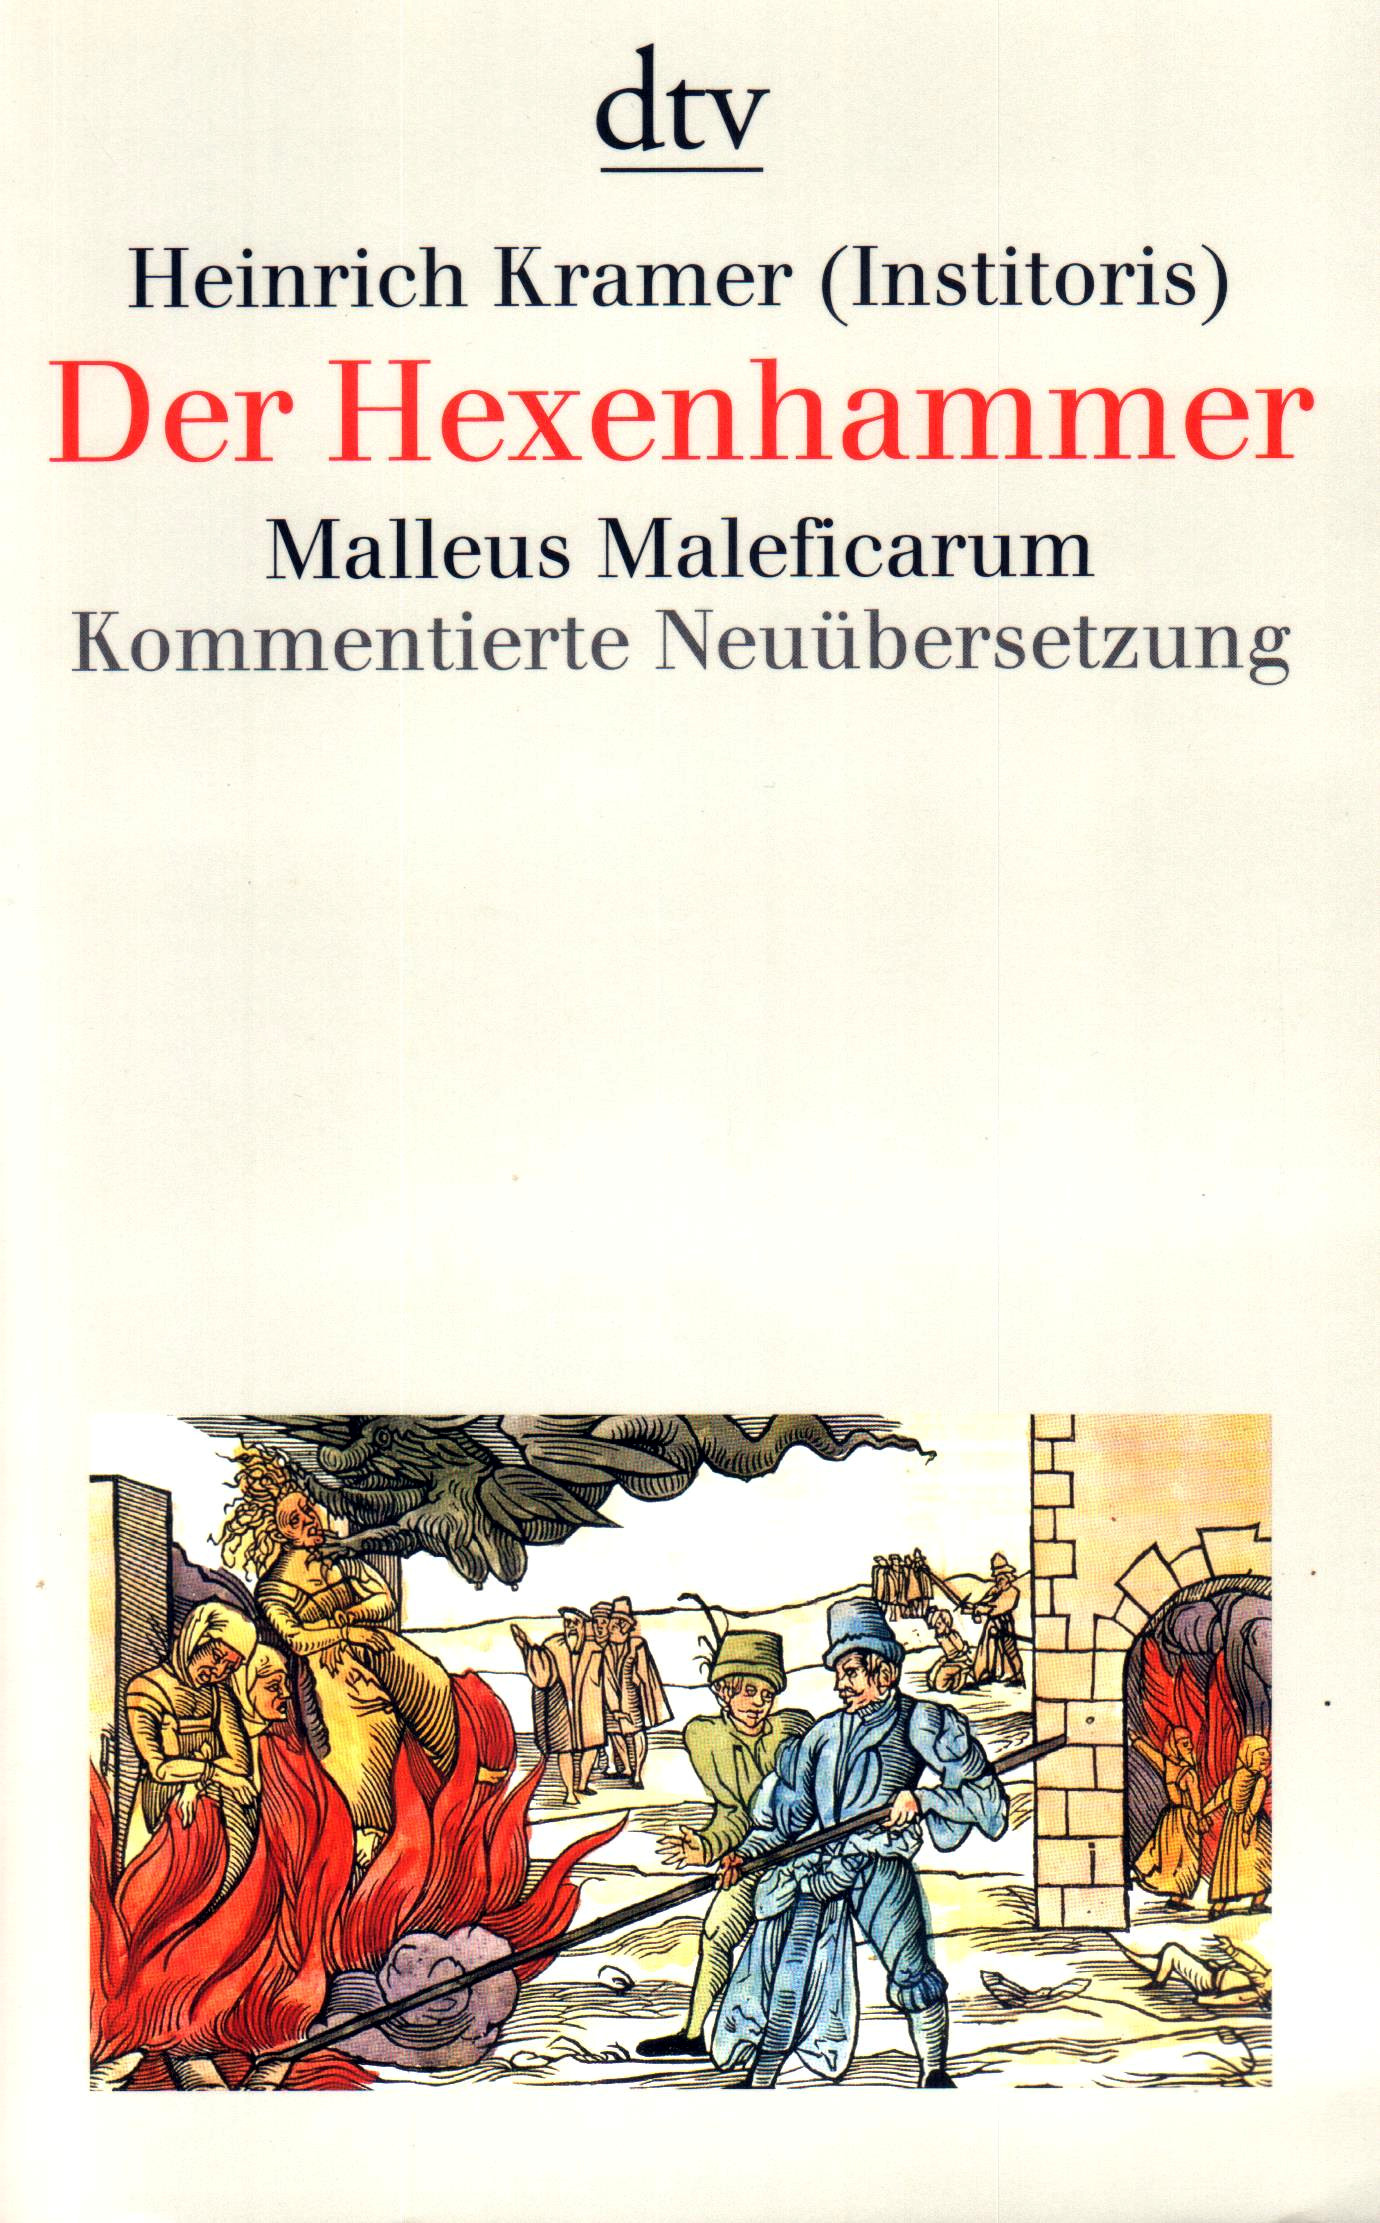 Der Hexenhammer – Malleus Maleficarum